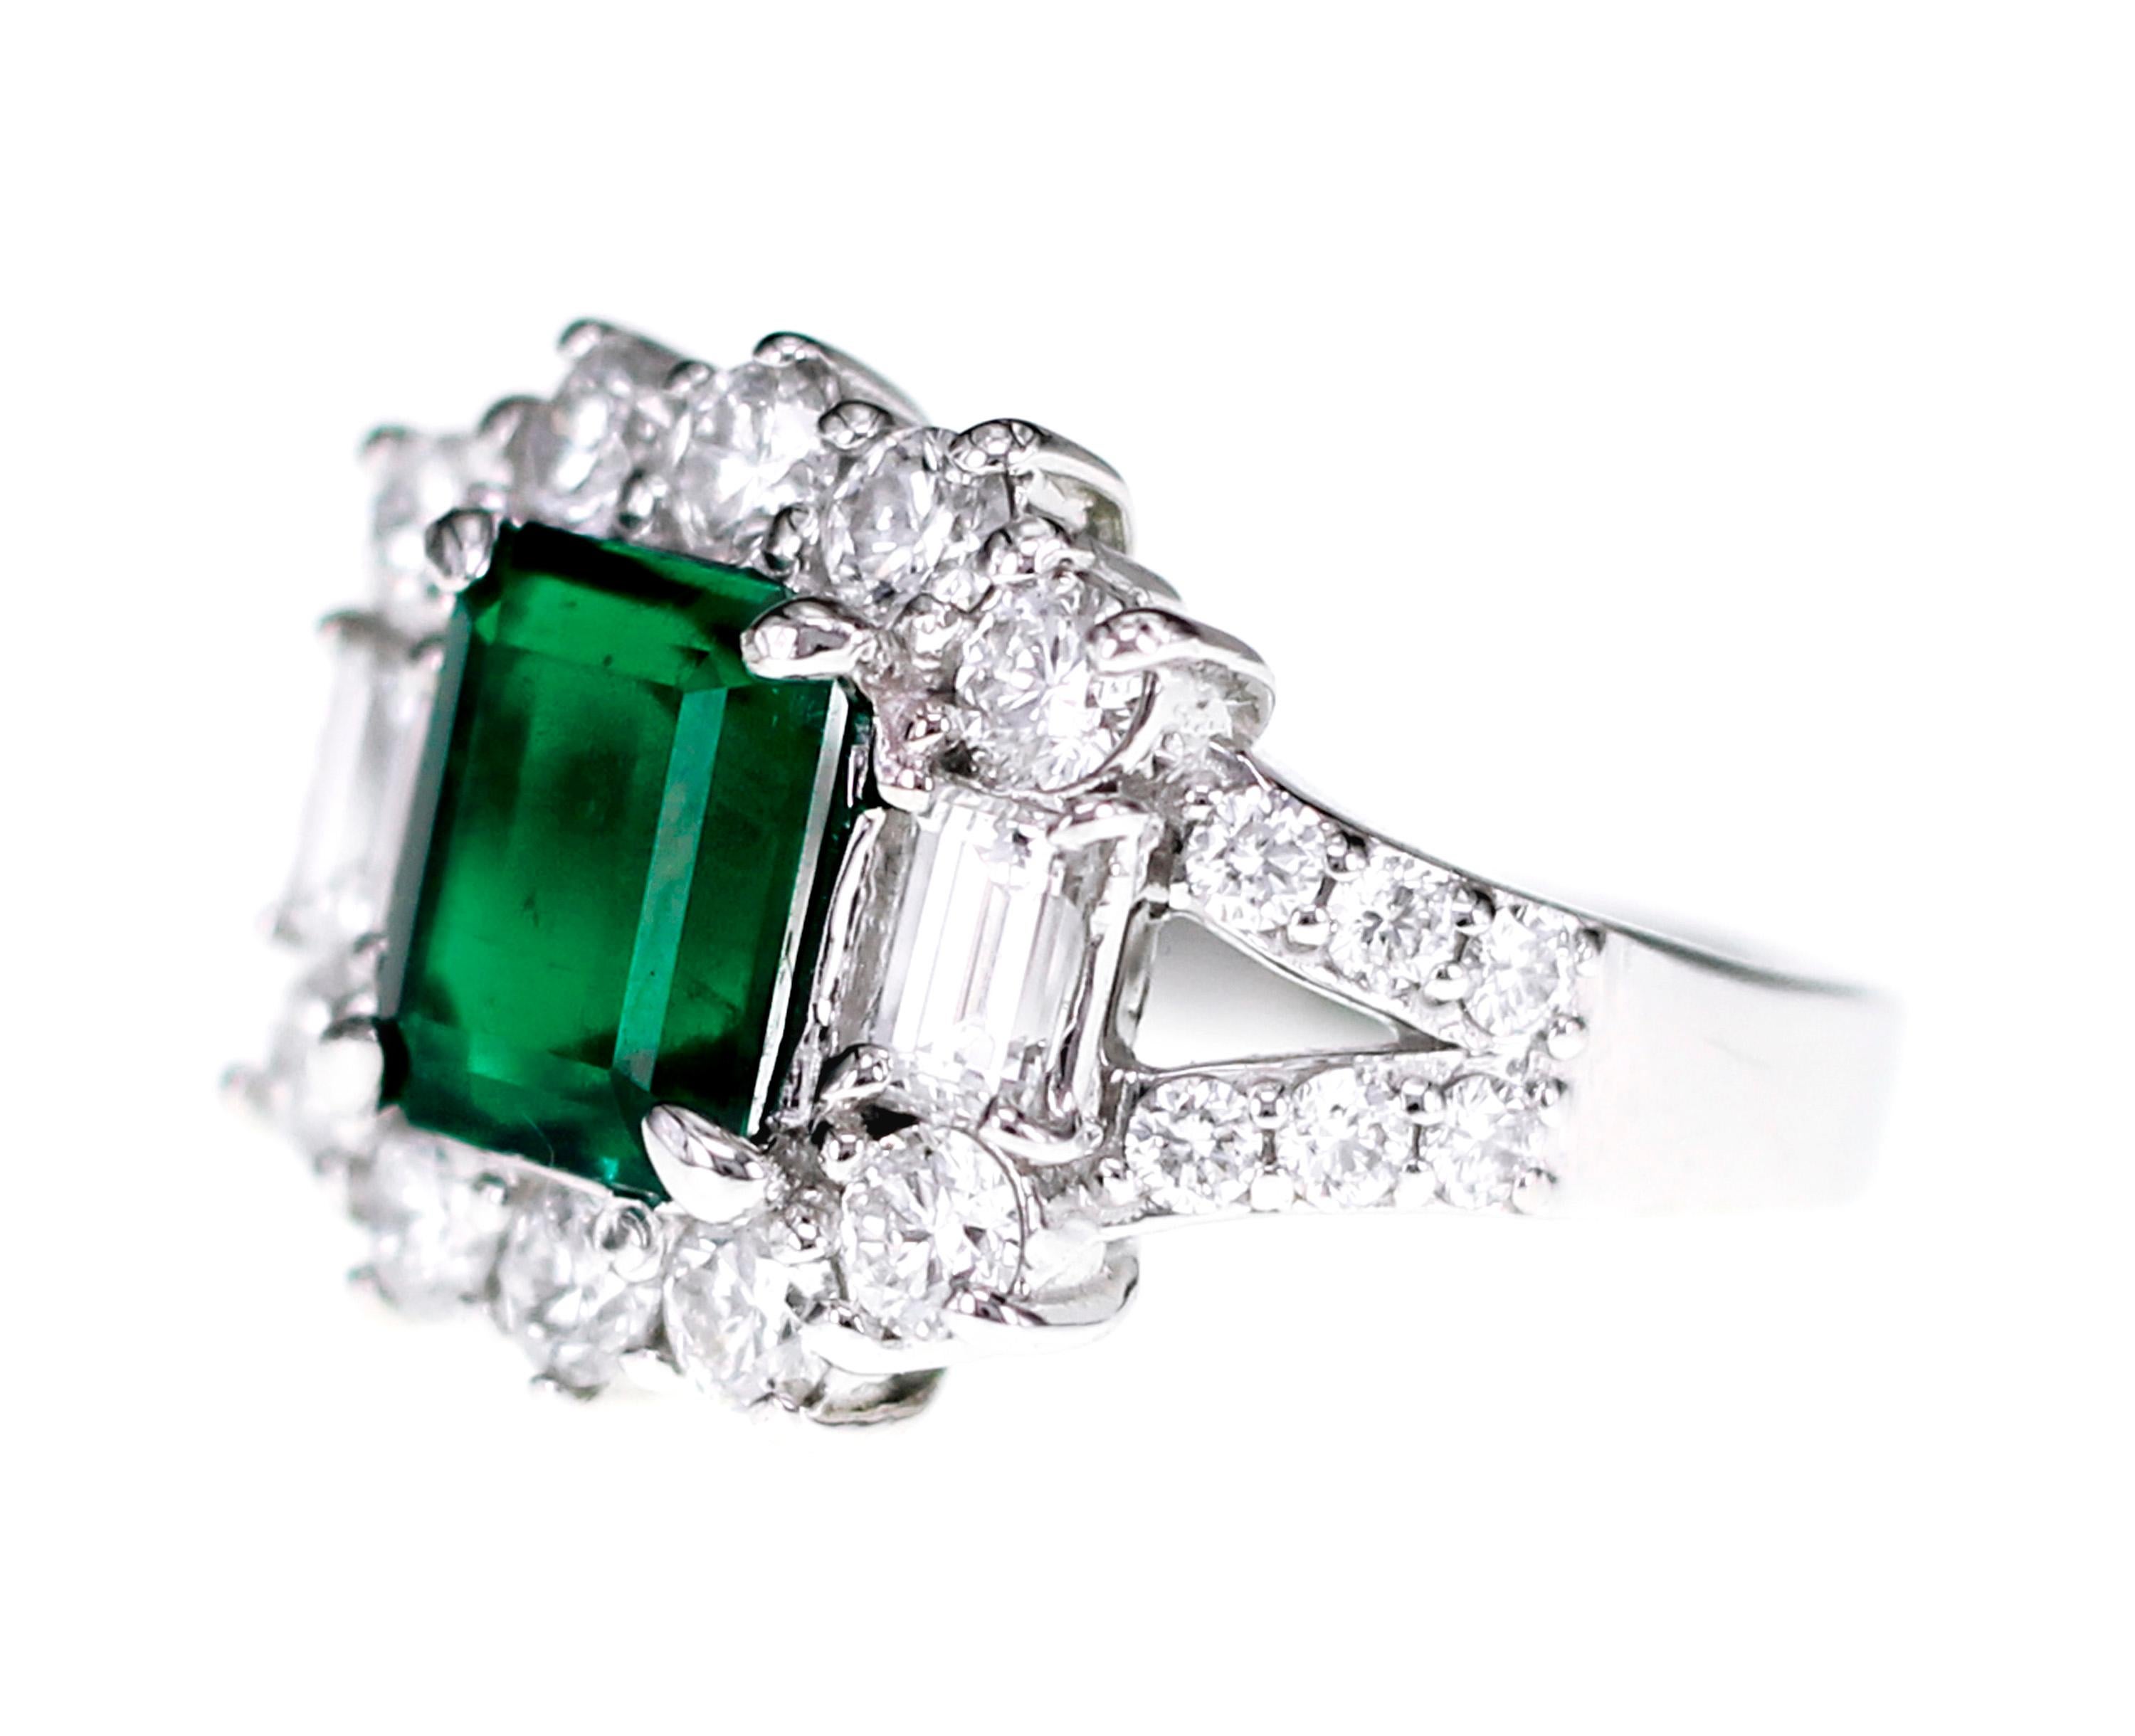 Réalisée en platine, cette bague se compose de 1,99 carat d'émeraude de Colombie vert vif et de 1,76 carat de diamants blancs de qualité VVS de couleur D. L'anneau possède un certificat spécial de couleur MUZO. Cette émeraude saturée de 1,99 carats